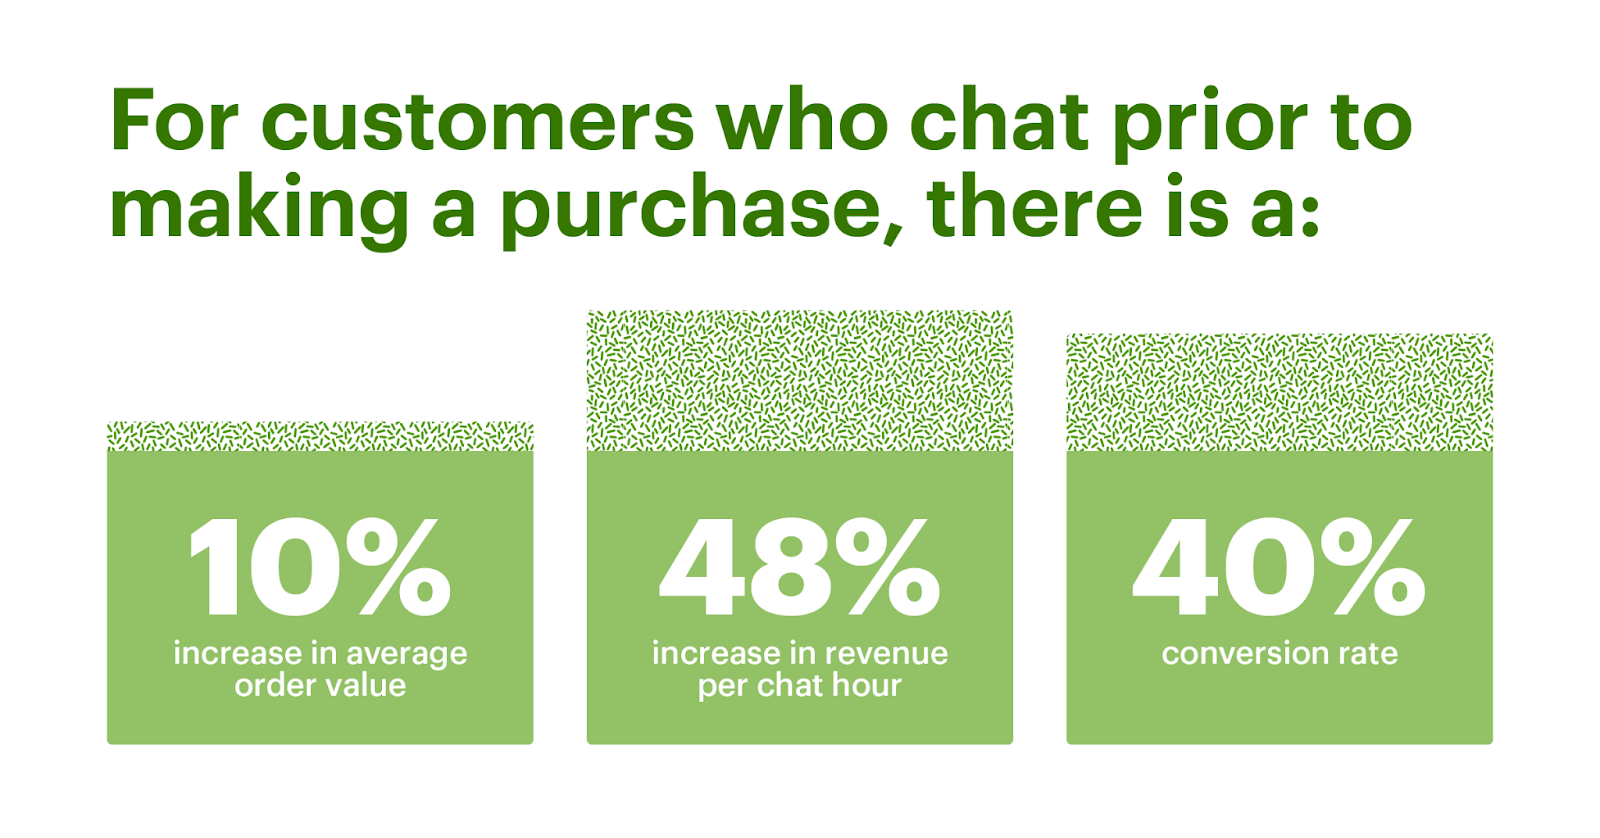 Para los clientes que chatean antes de realizar una compra, hay un aumento del 10 % en el valor promedio del pedido, un aumento del 48 % en los ingresos por hora de chat y una tasa de conversión del 40 %.